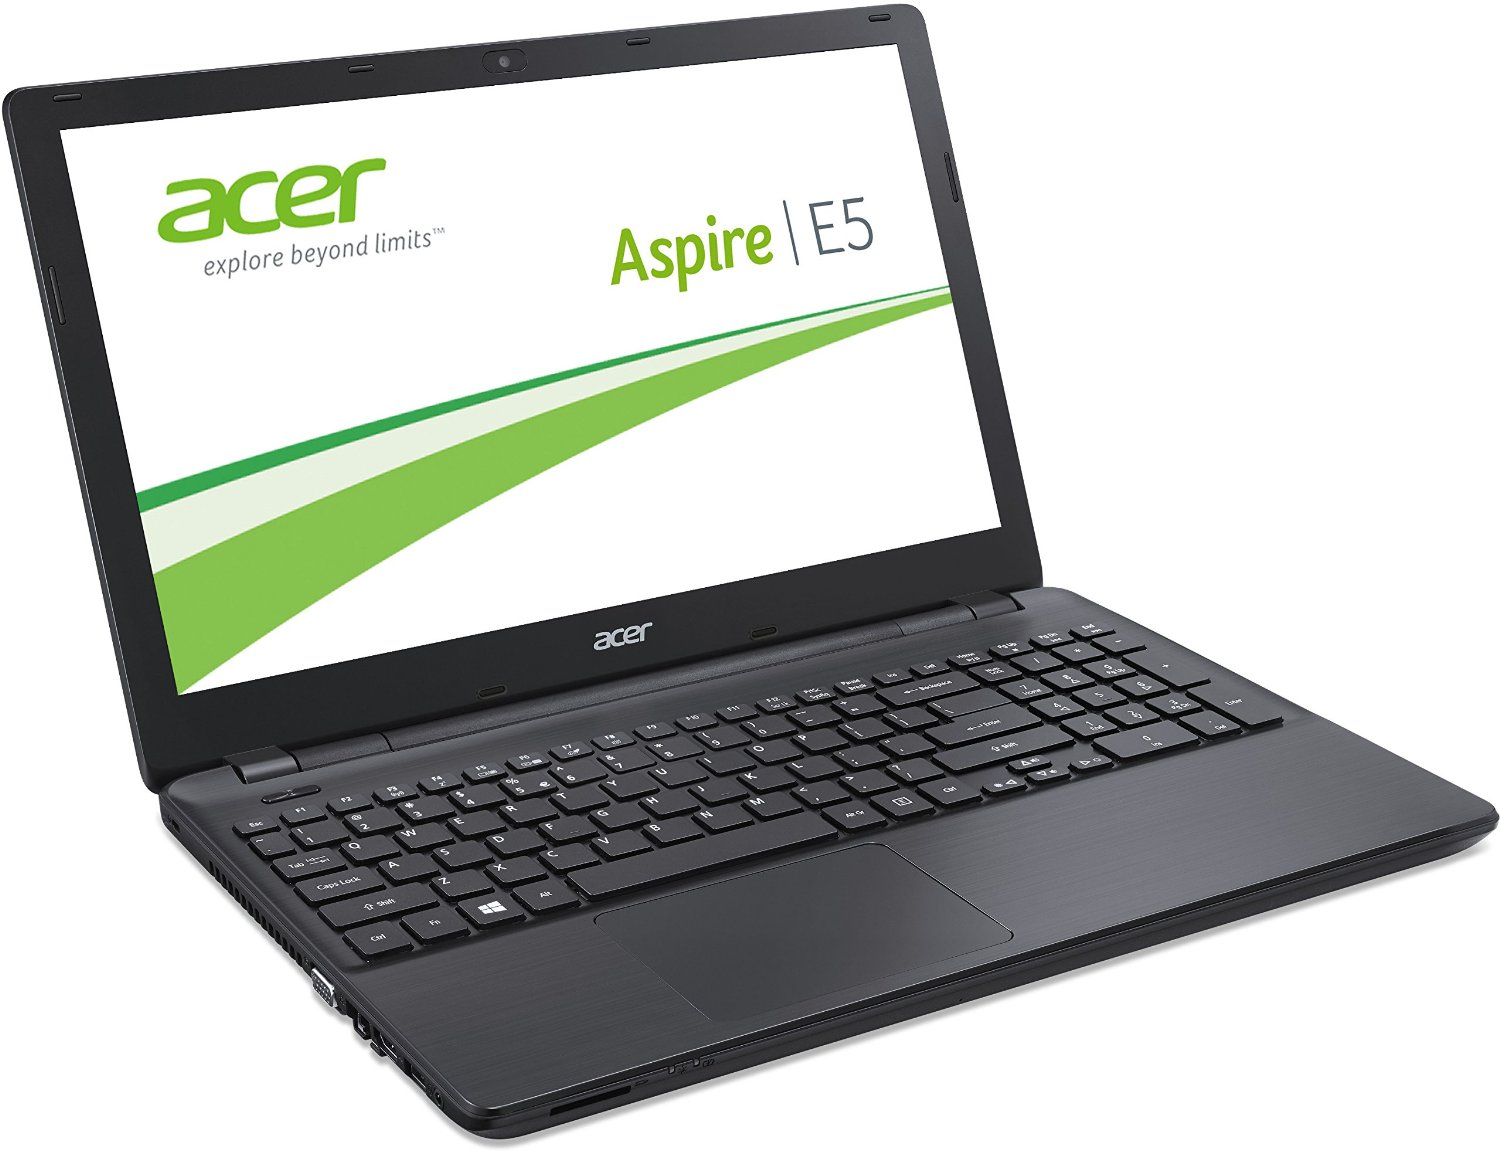 acer aspire e5 511 laptop review